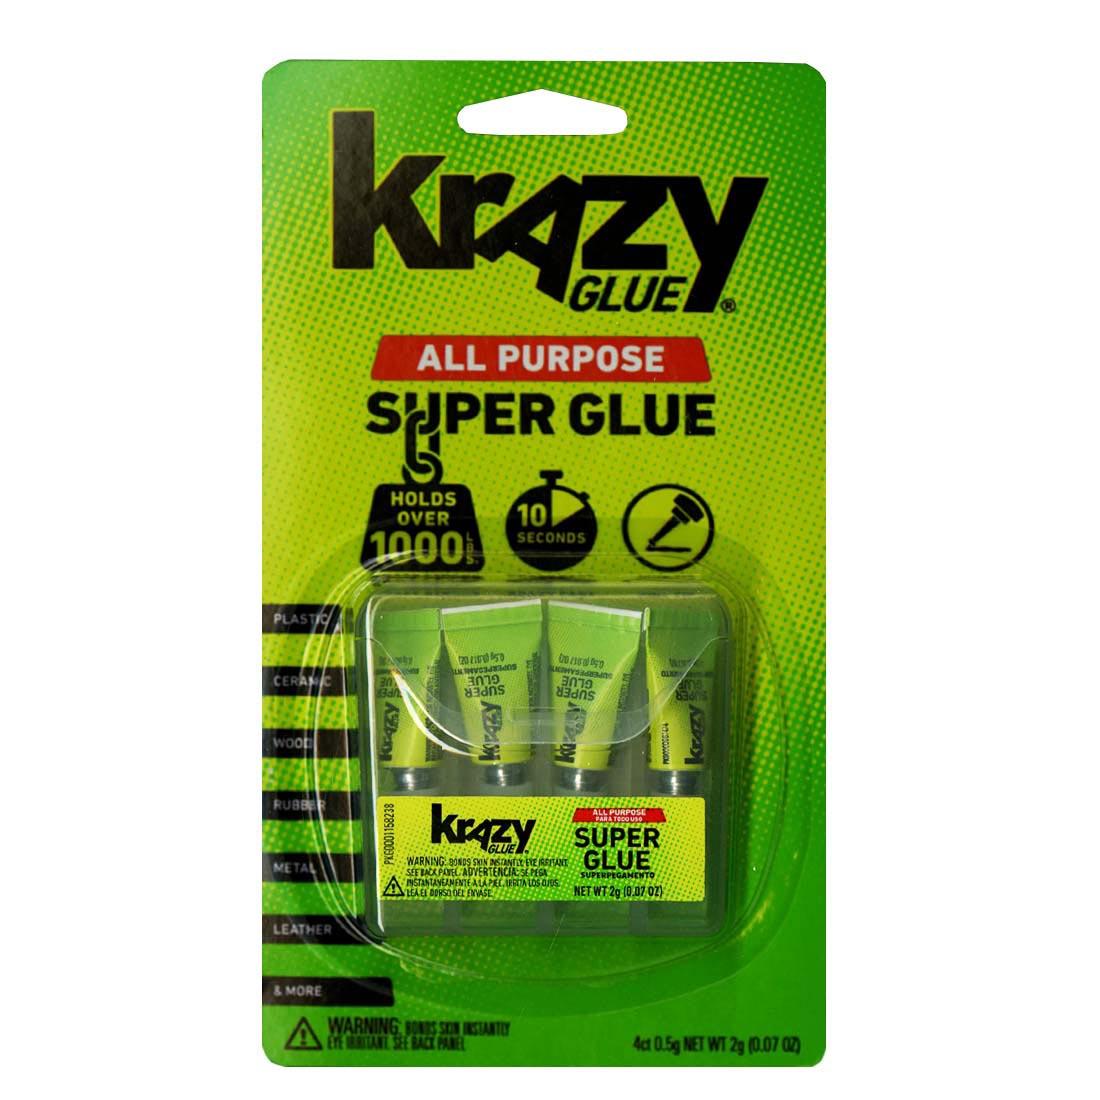 Krazy Glue All Purpose Super Glue